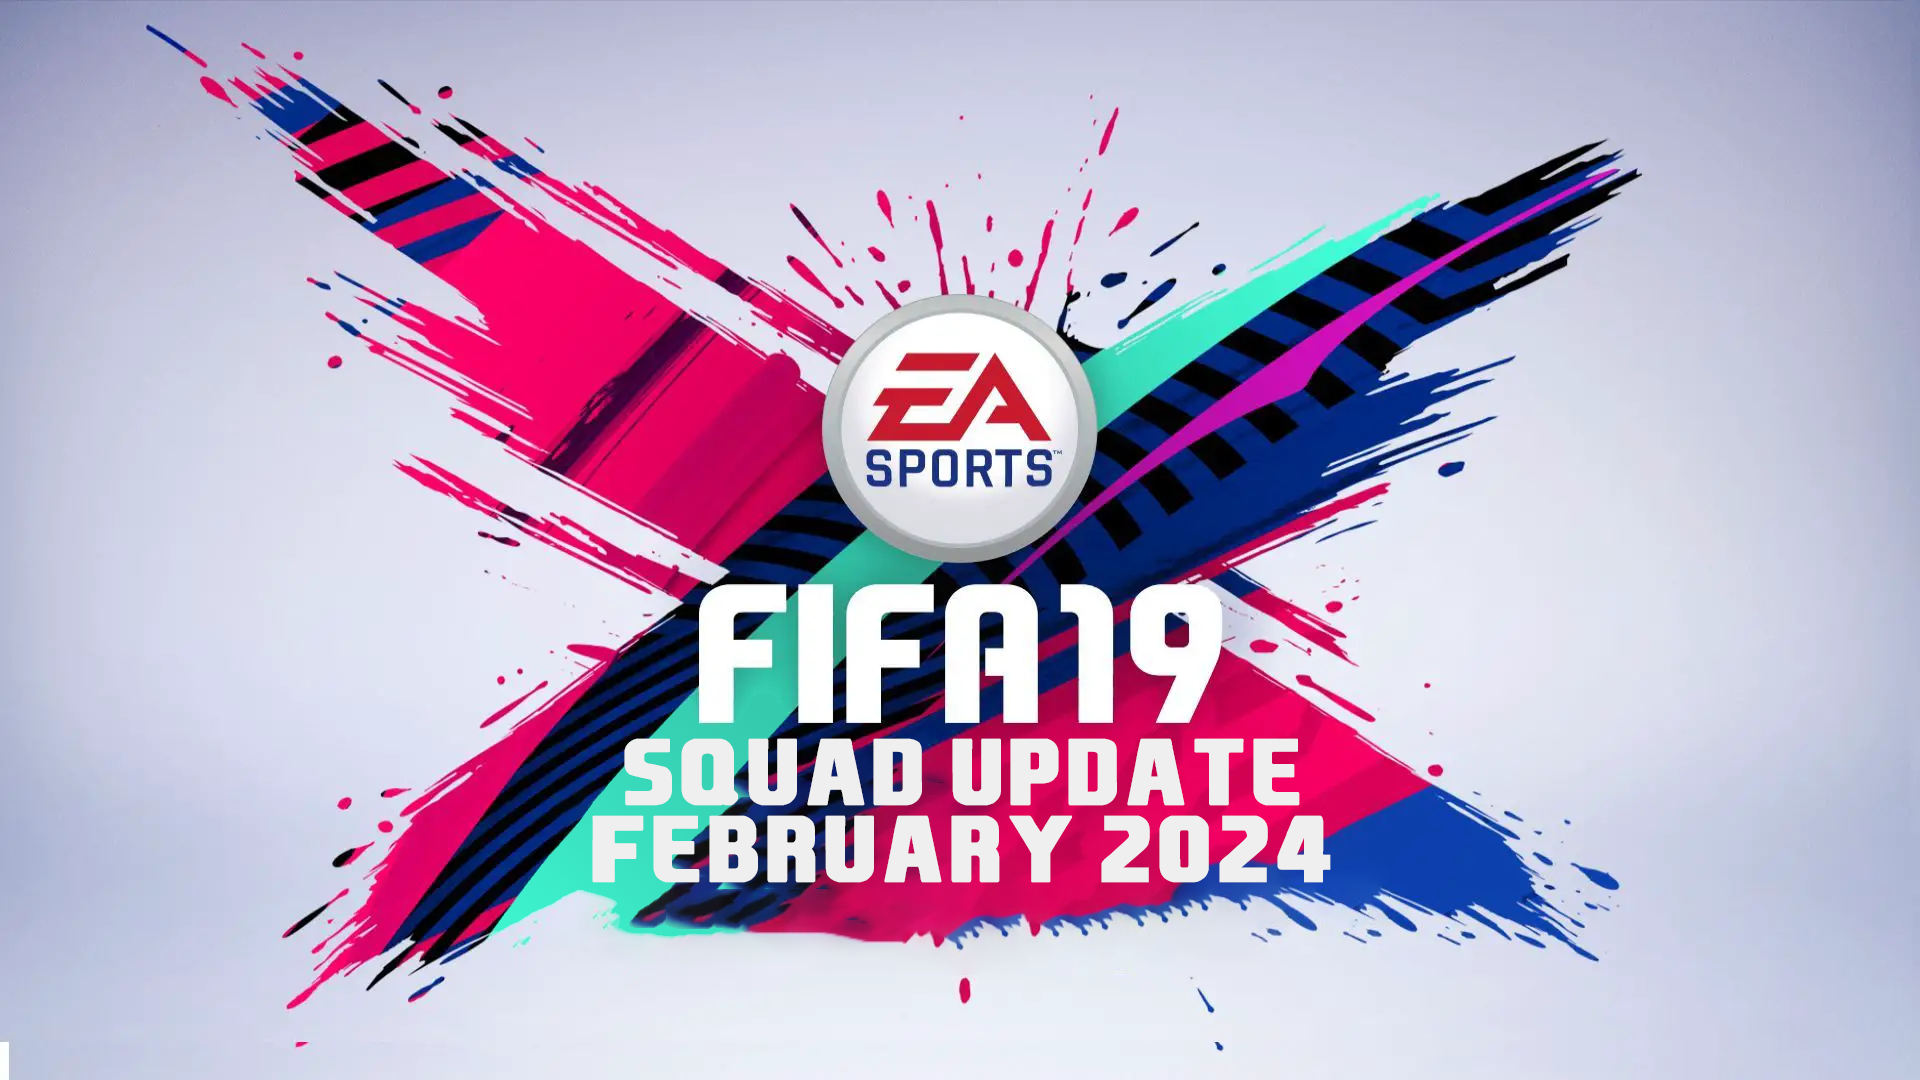 FIFA 19 Squad Update February 2024